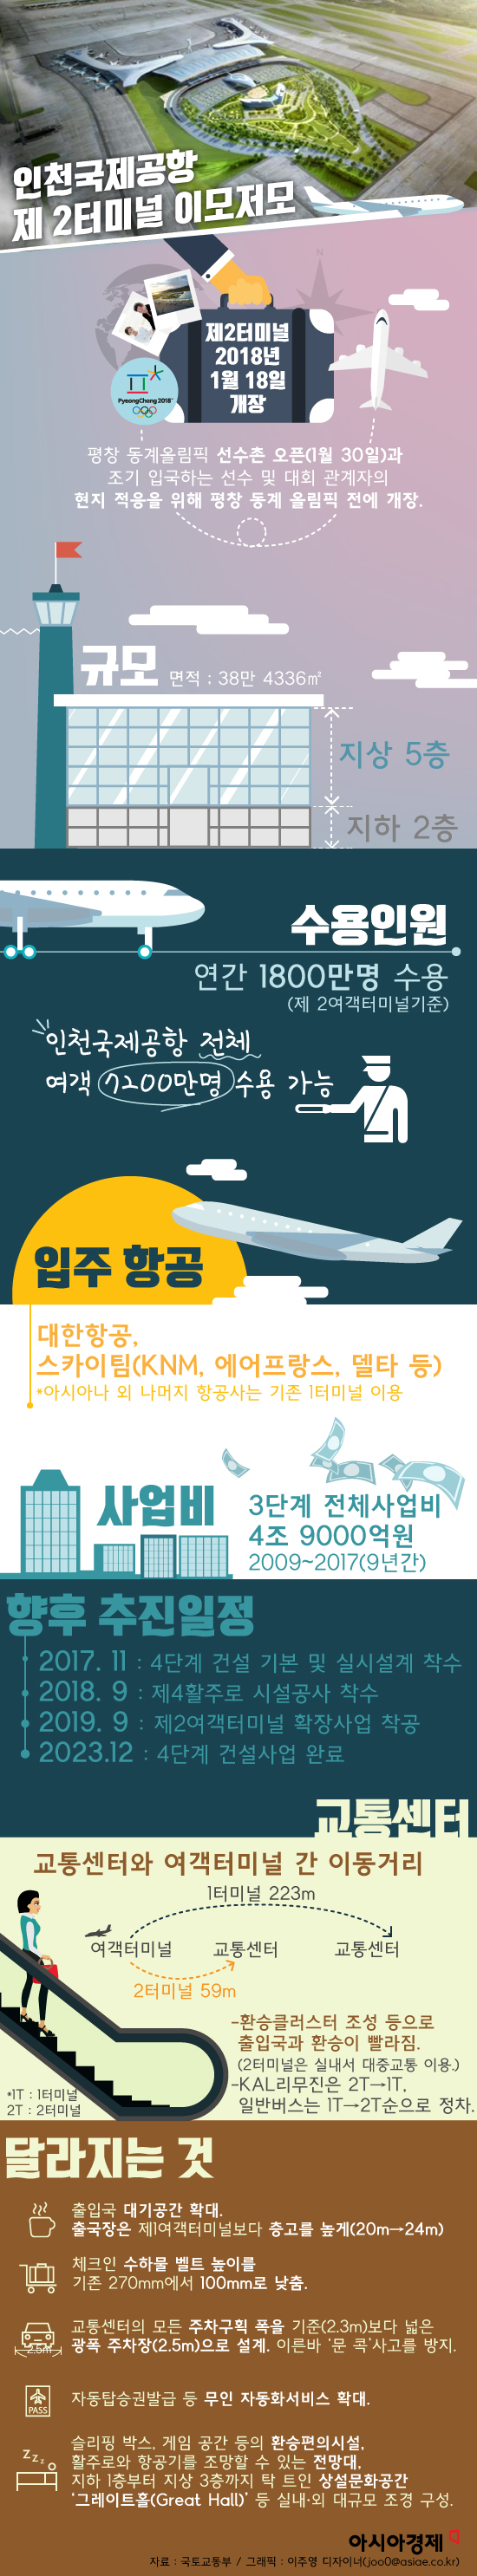 [그래픽]인천국제공항 제2터미널, 무엇이 달라지나